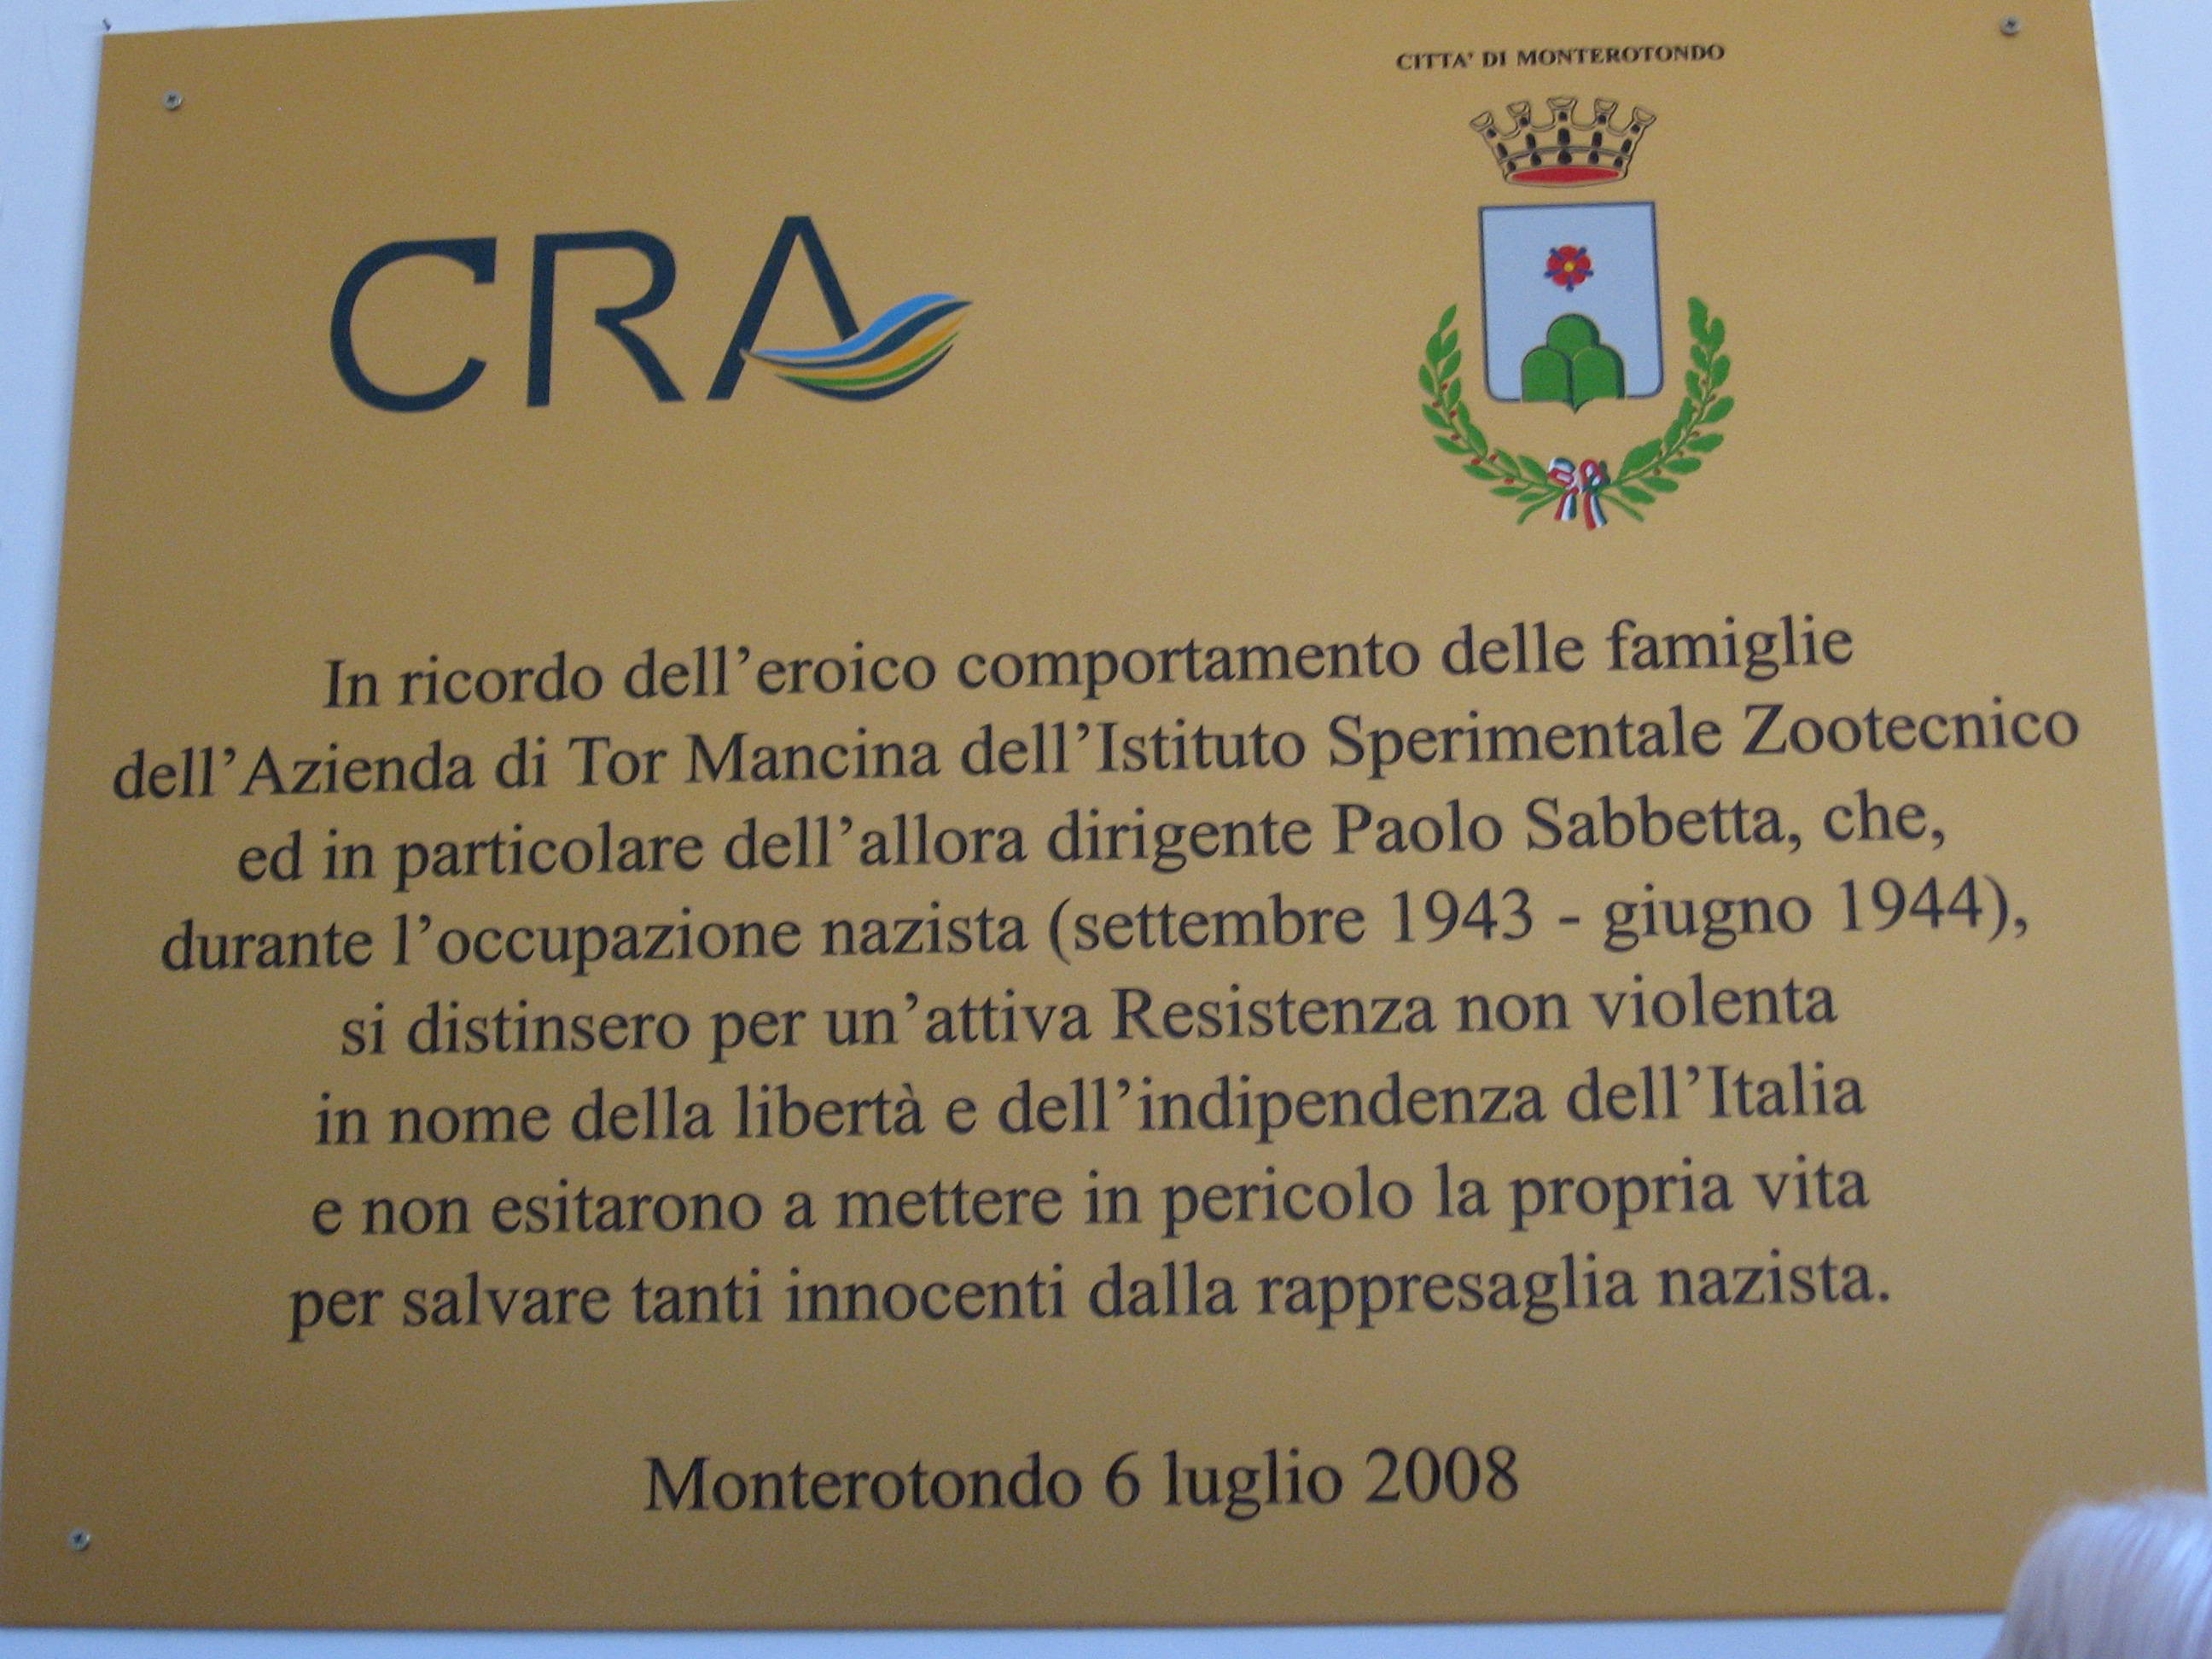 Targa commemorativa affissa nell'edificio della Direzione di Tormancina inaugurata il 6 luglio 2008